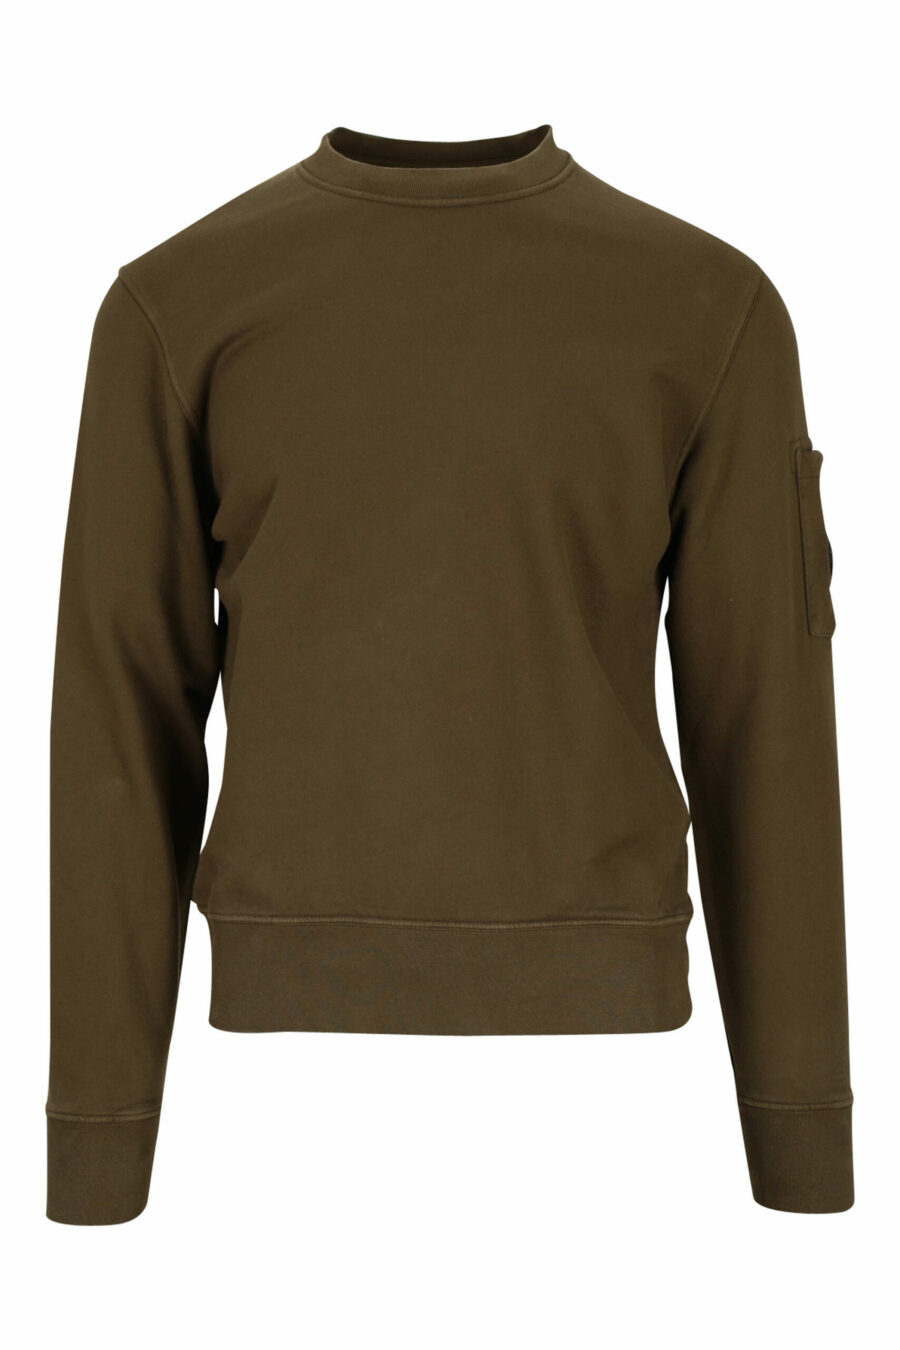 Militärgrünes Sweatshirt mit seitlicher Logolinse - 7620943598582 skaliert